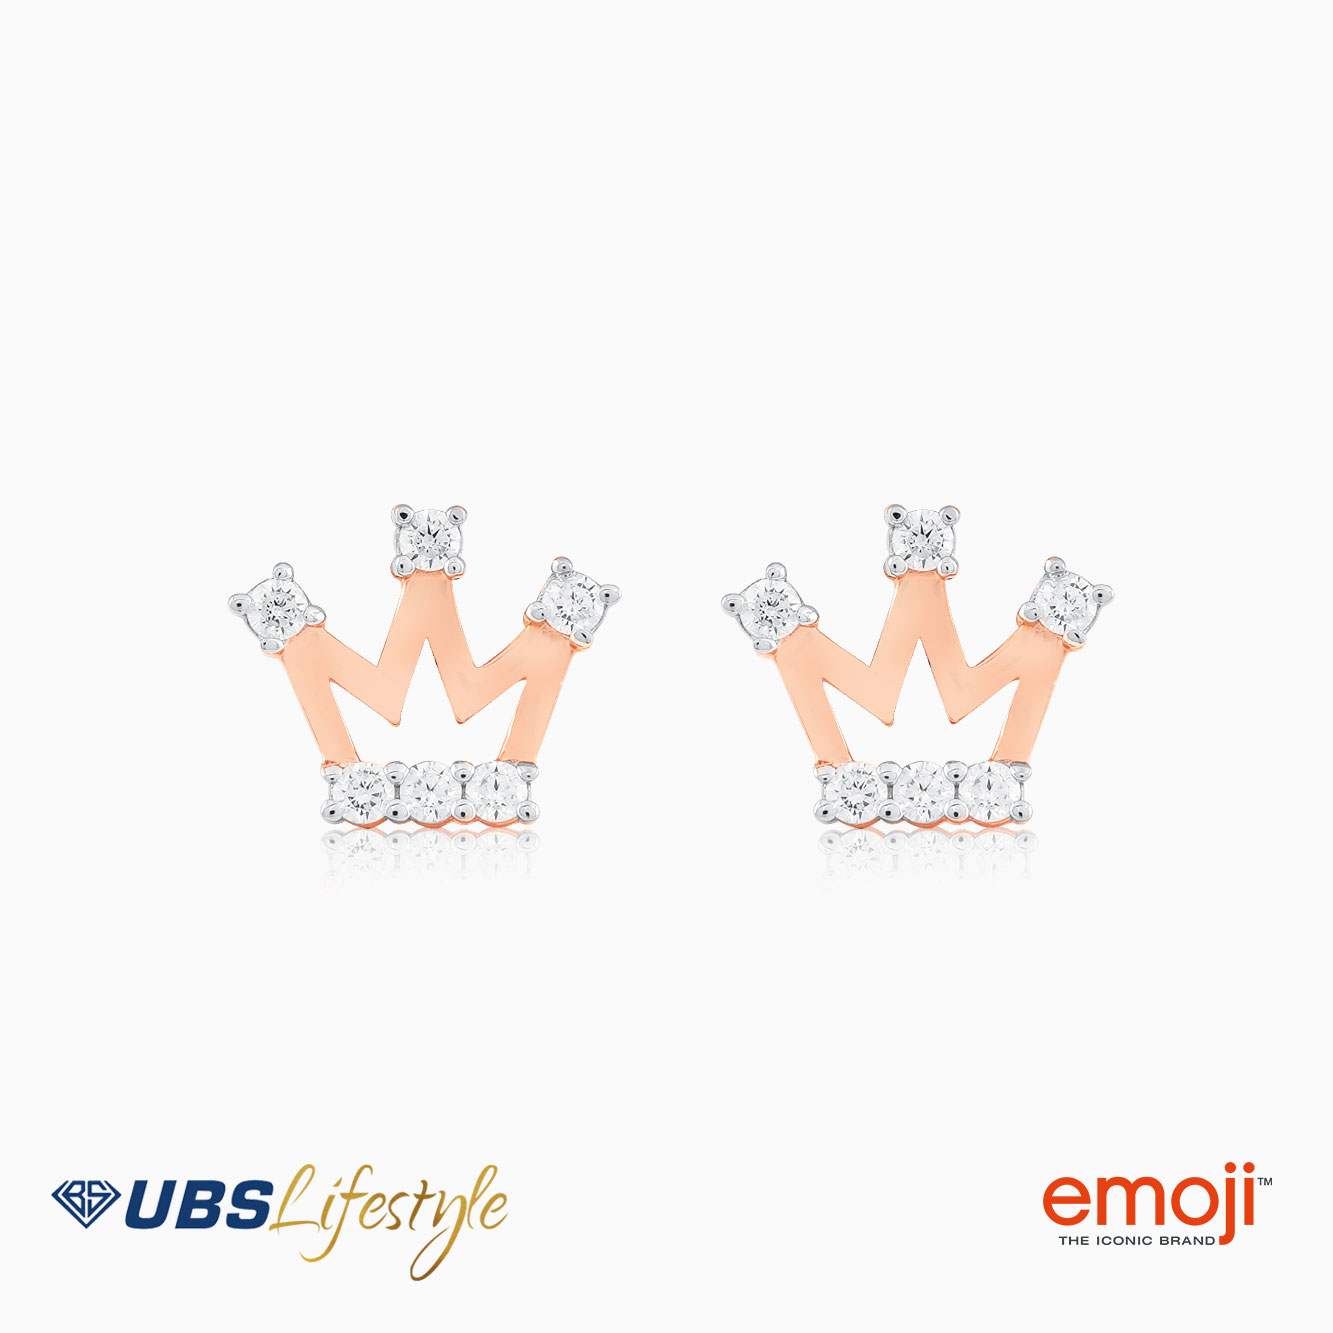 UBS Anting Emas Emoji - Cwq0002R - 17K